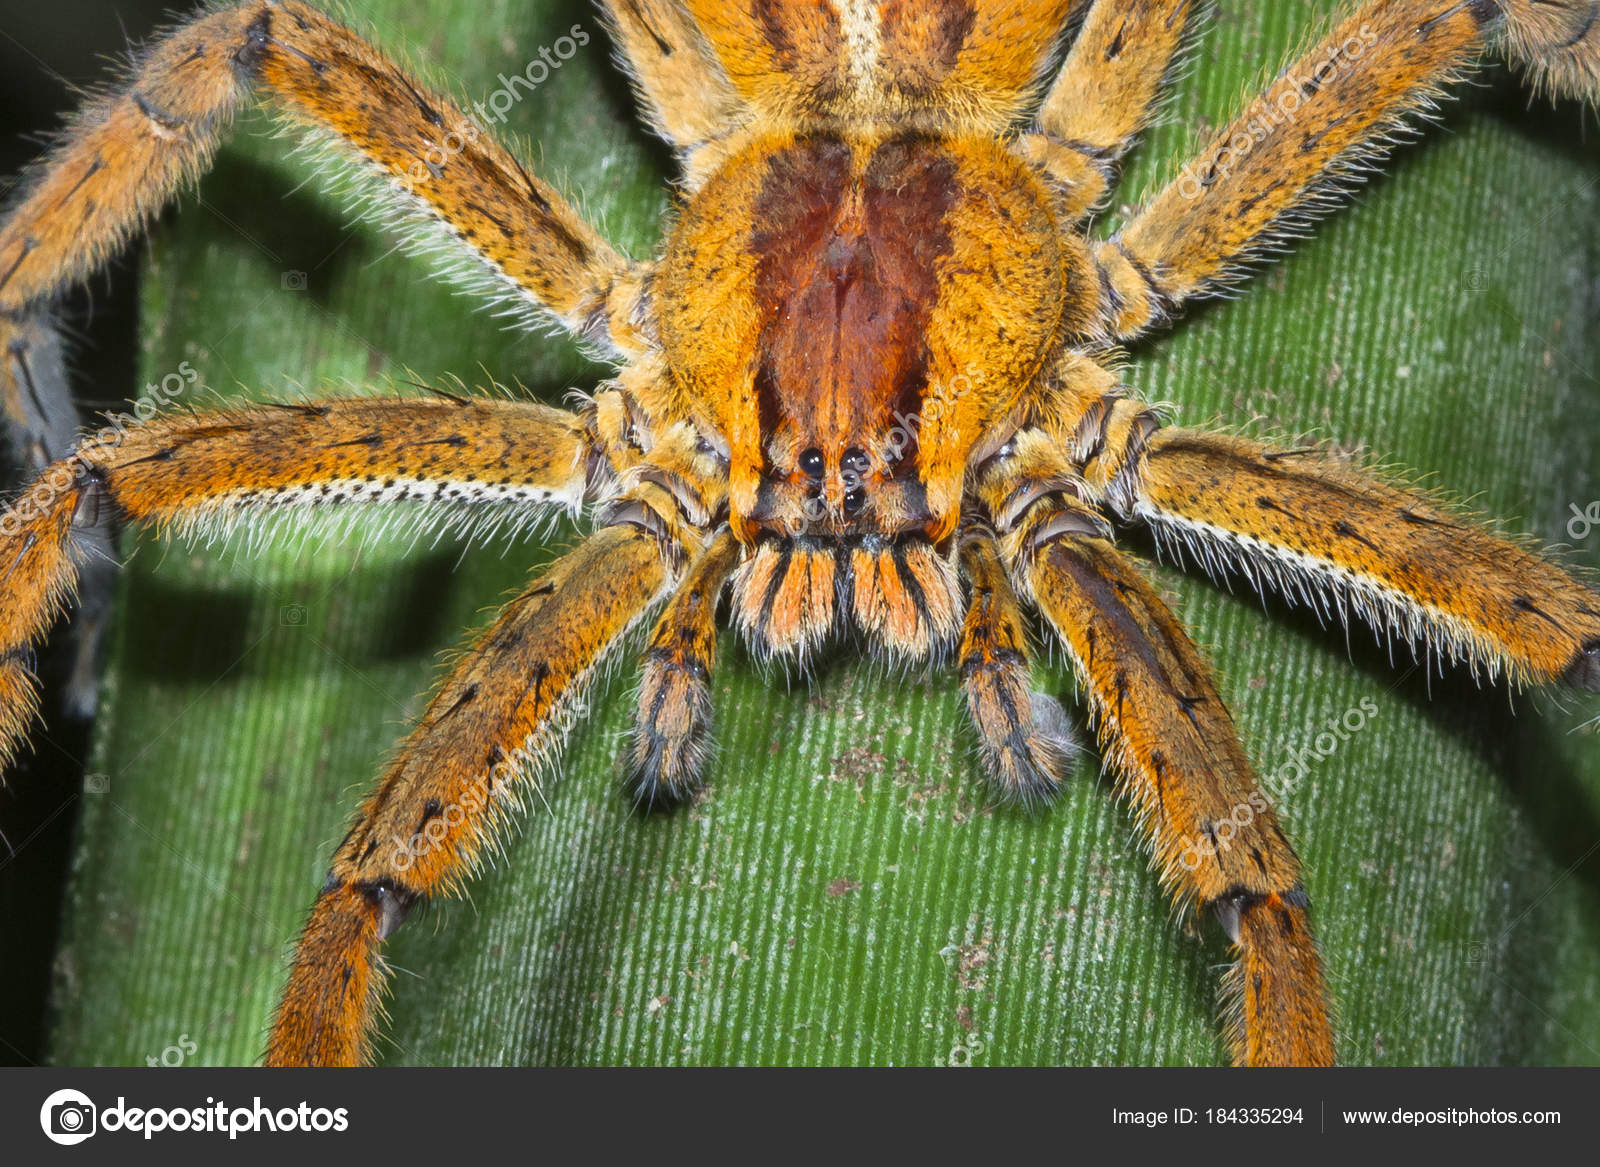 are brazilian wandering spiders tarantulas